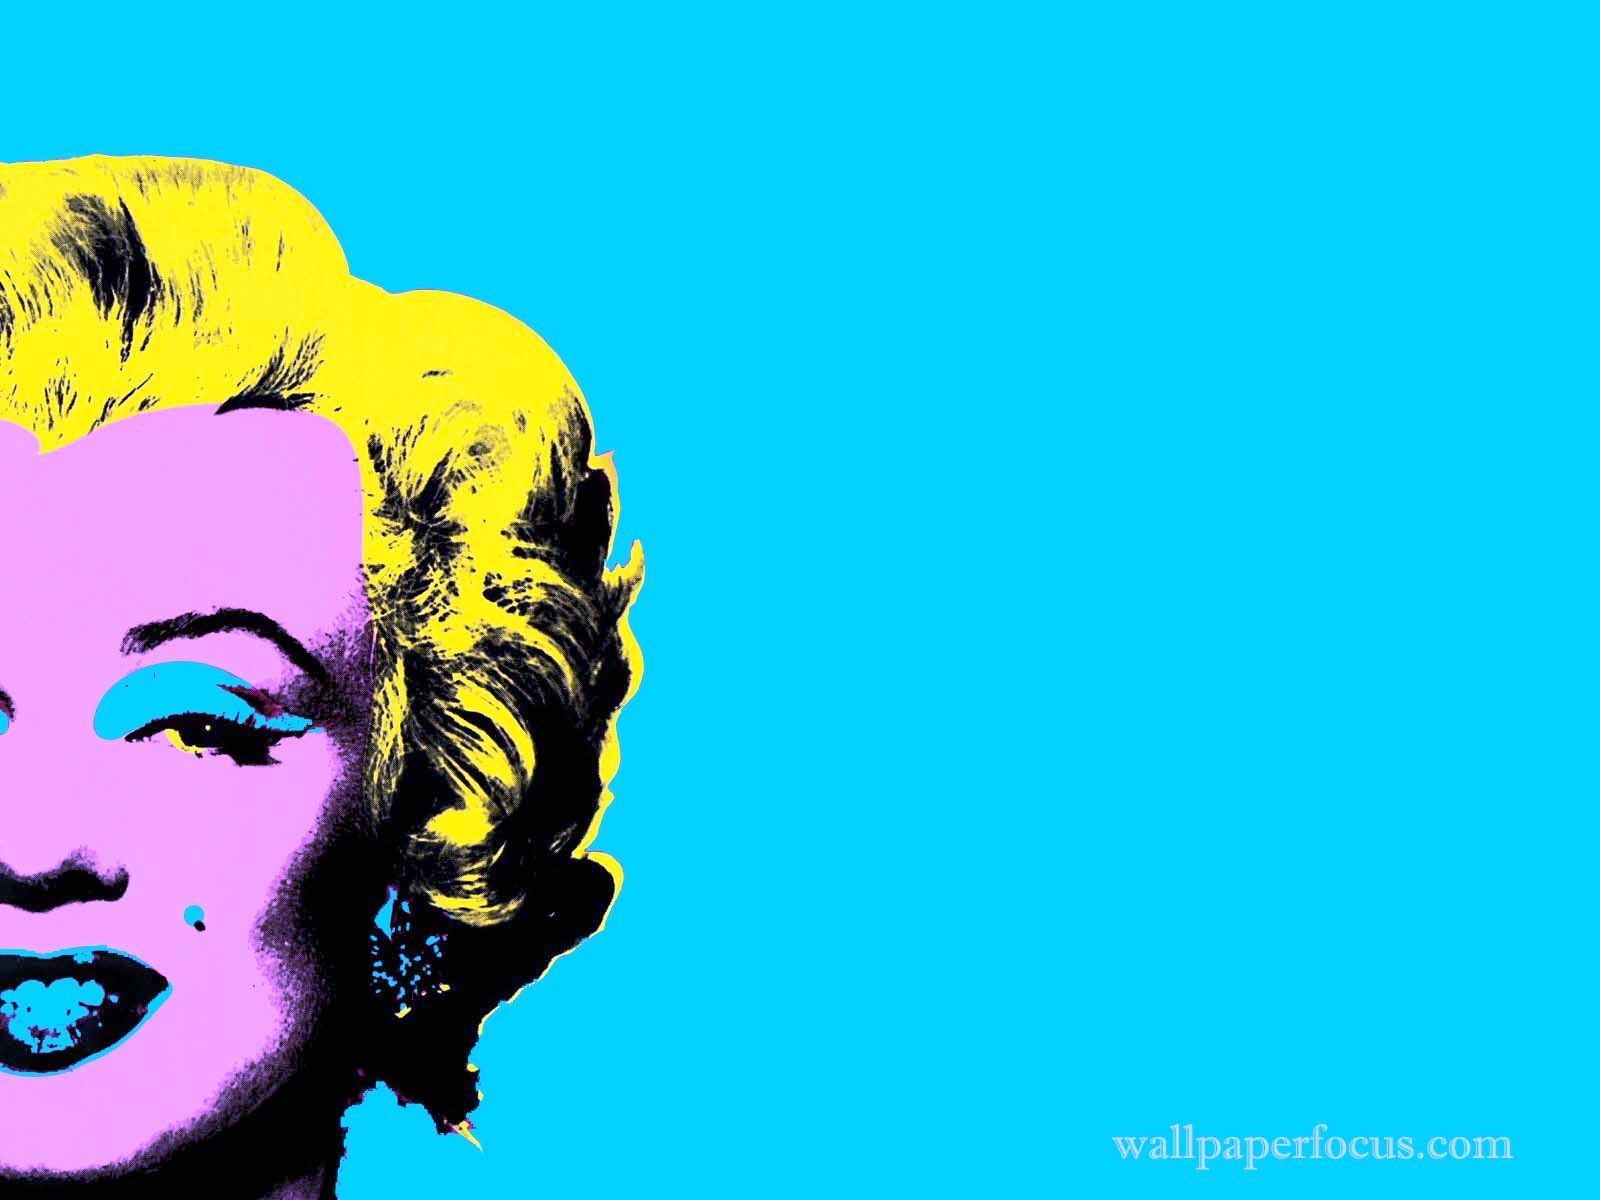 54qupi9 Andy Warhol Desktop Wallpaper Picserio